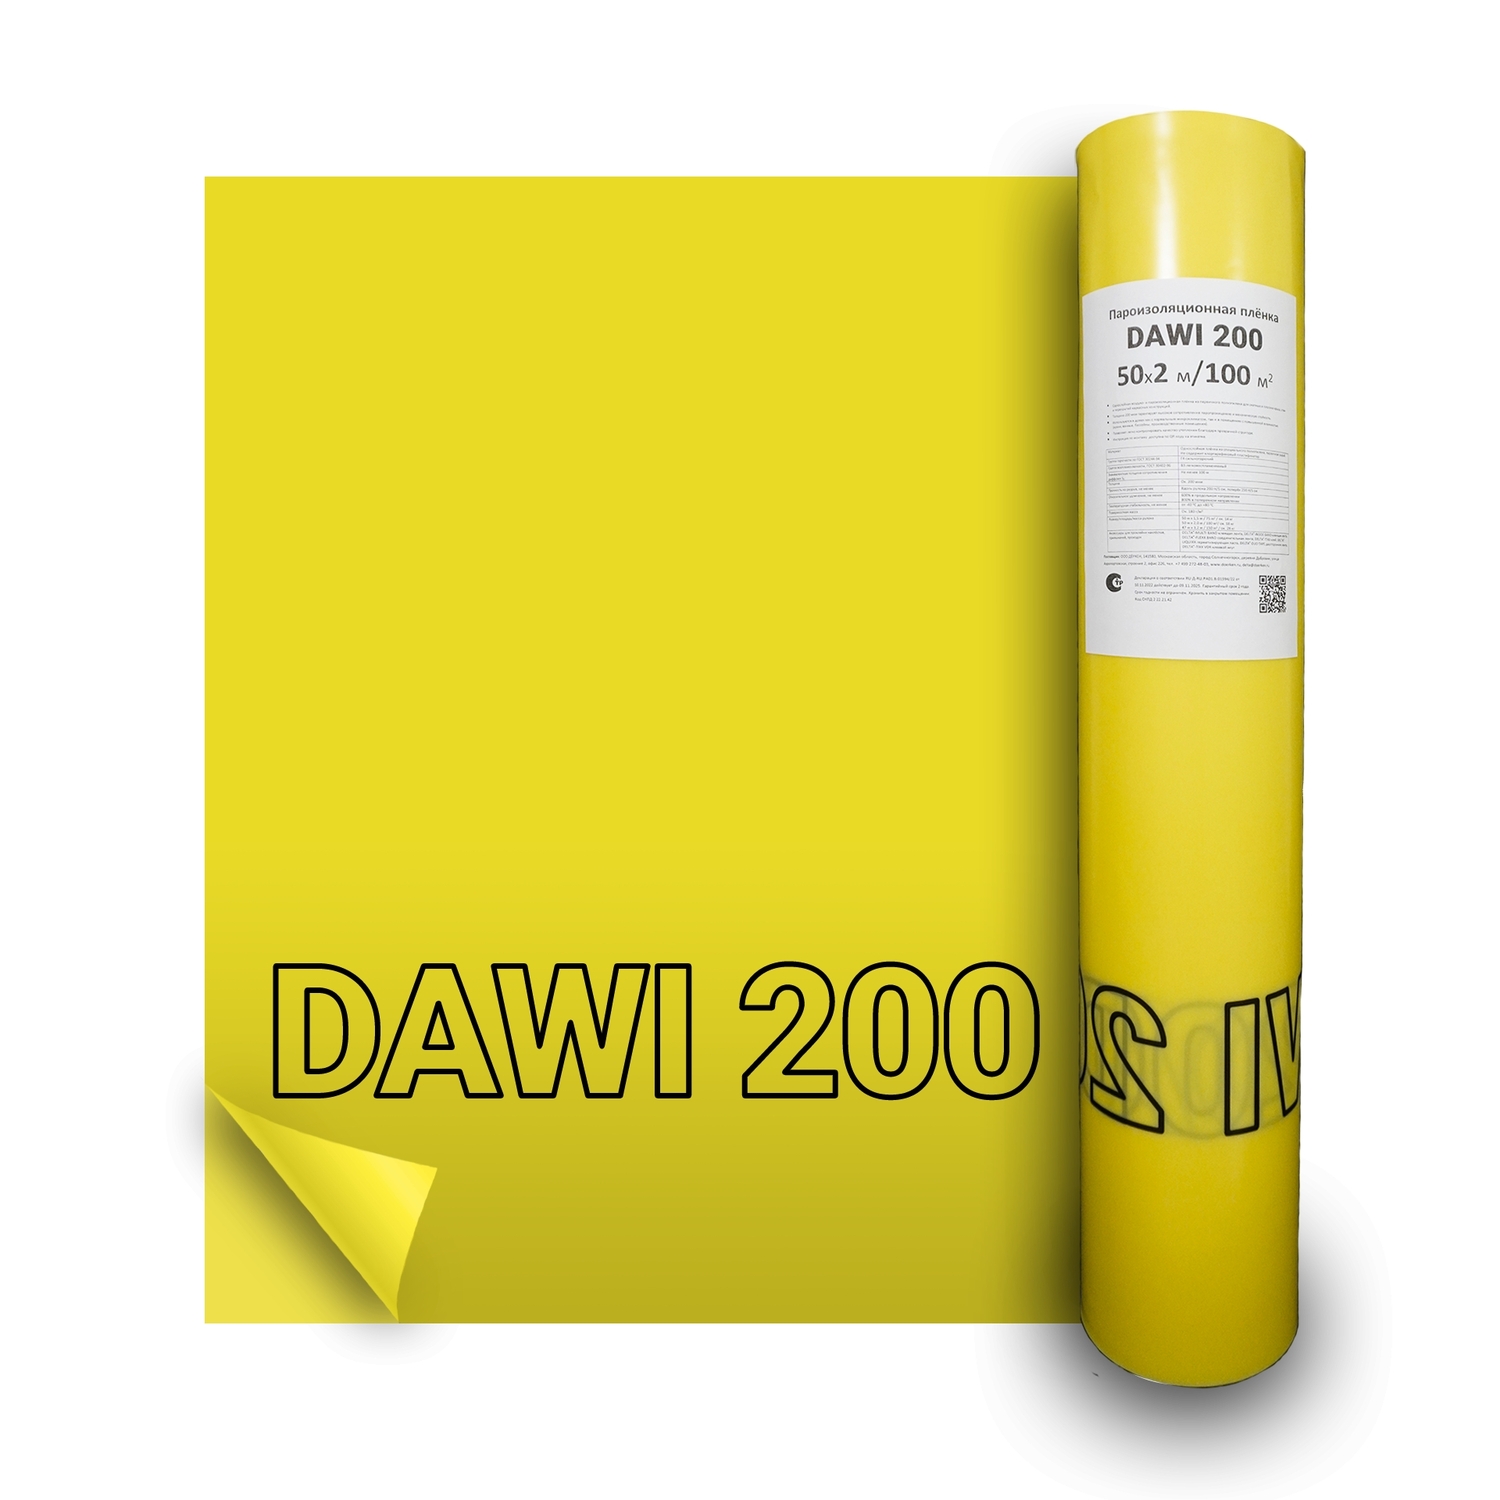 Пленка пароизоляционная Delta-Dawi 200 универсальная (100м2)